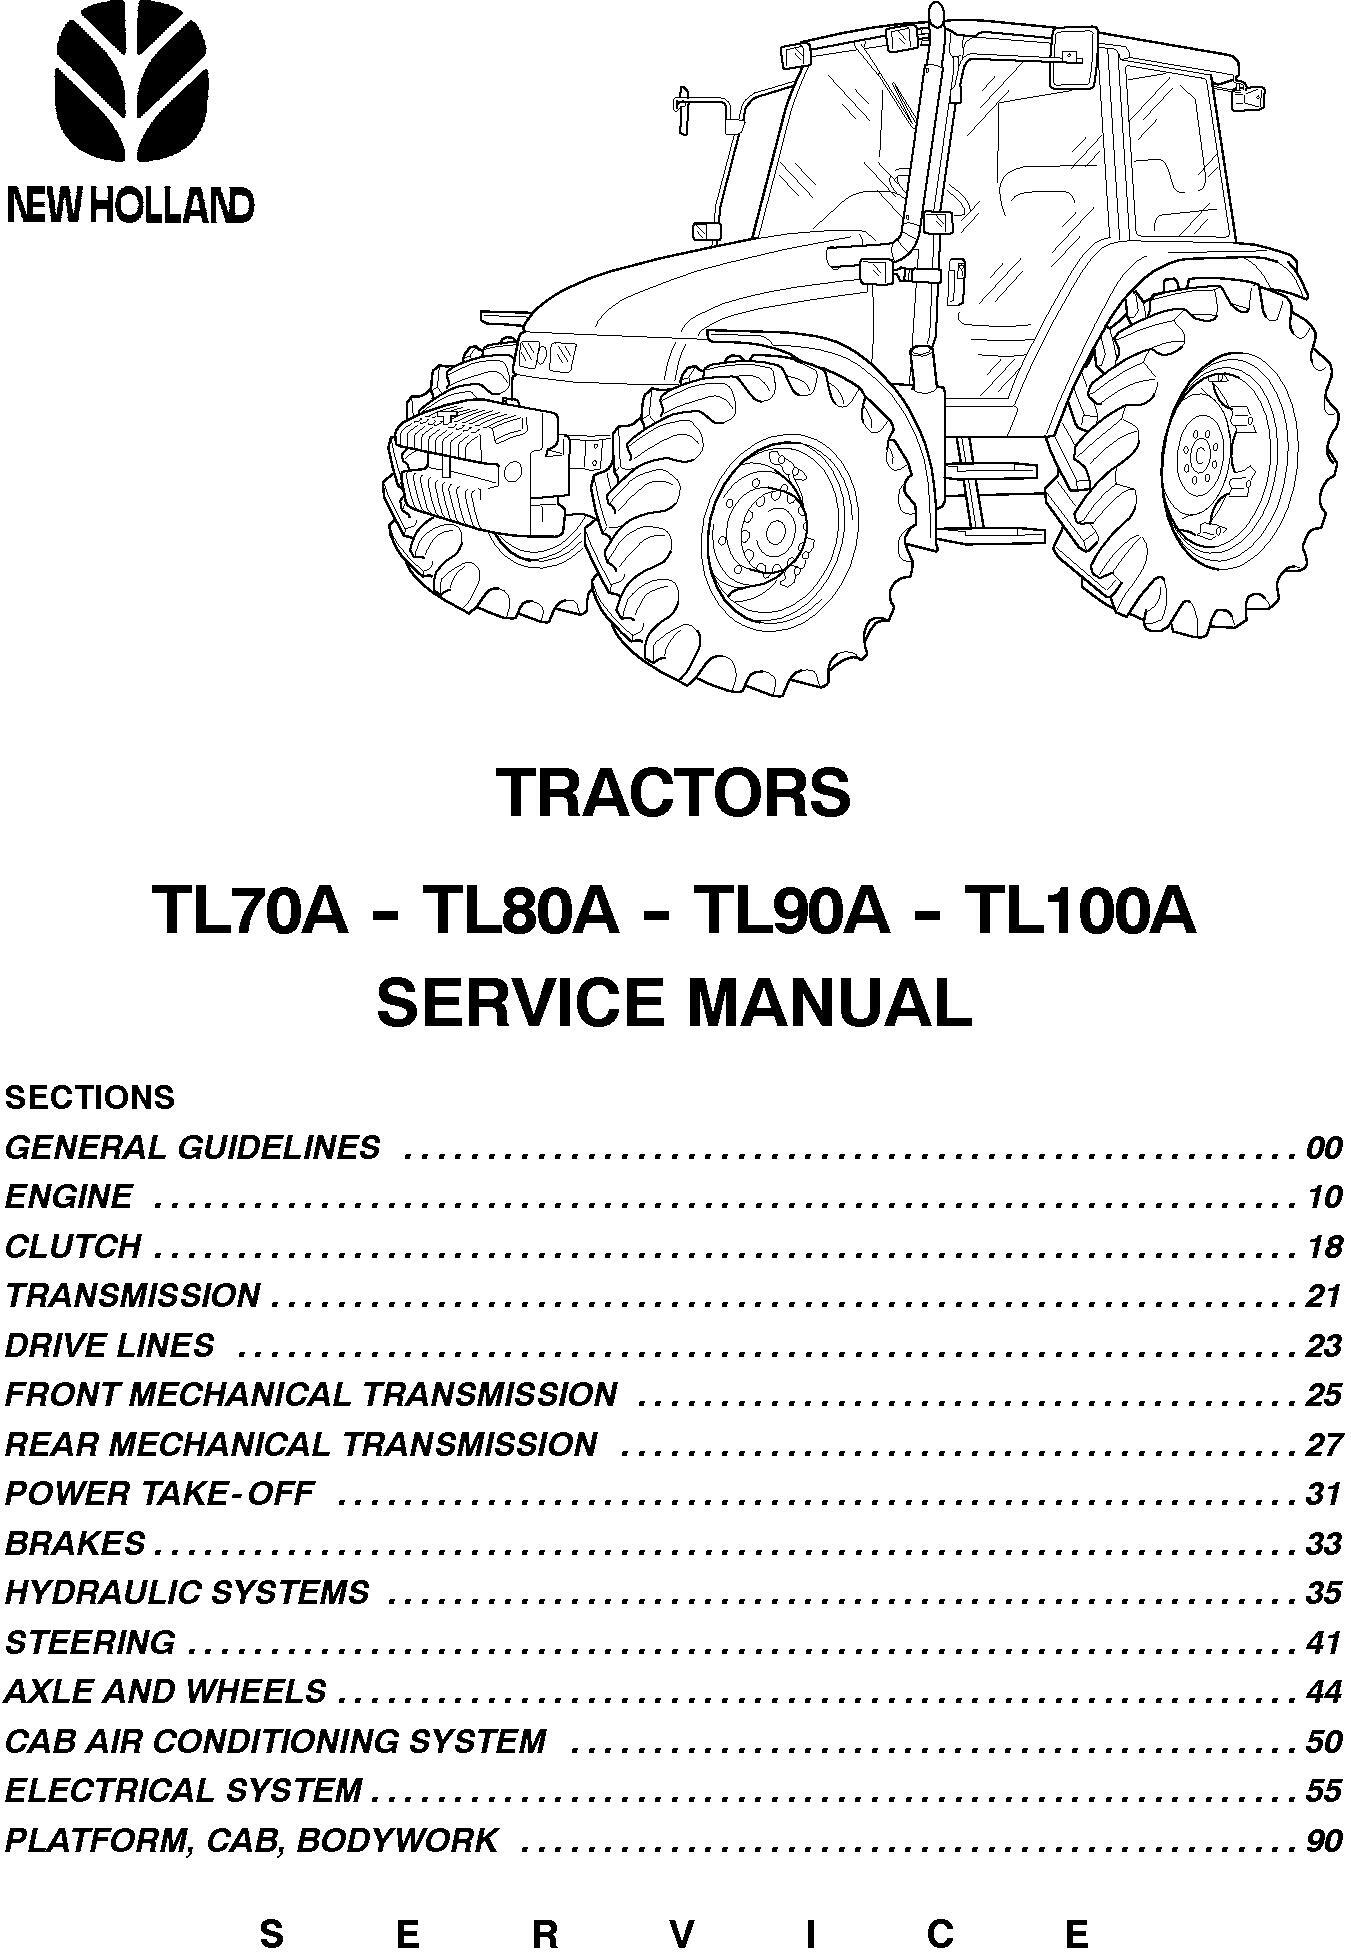 New Holland TL70A, TL80A, TL90A, TL100A tractor Service Manual - 19539